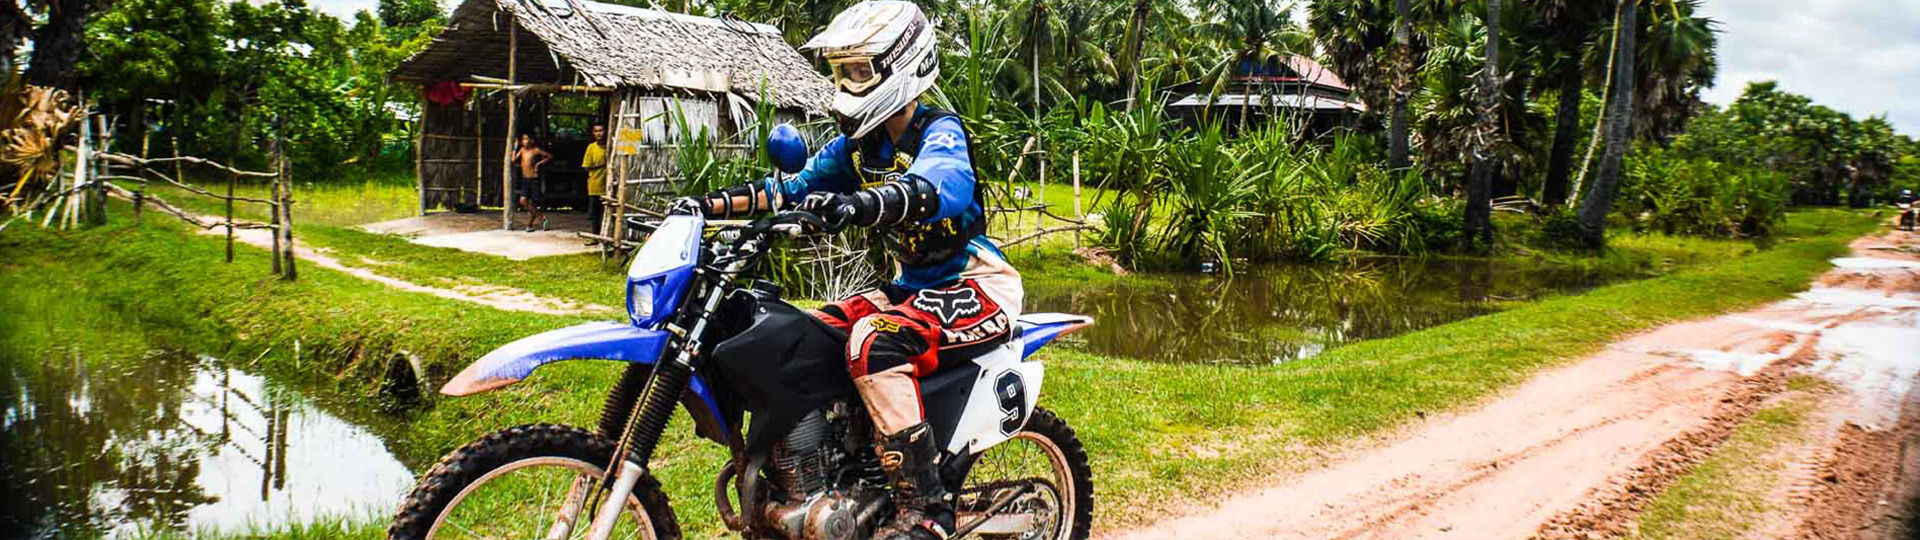 5 Days Saigon Motorcycle Tour Around